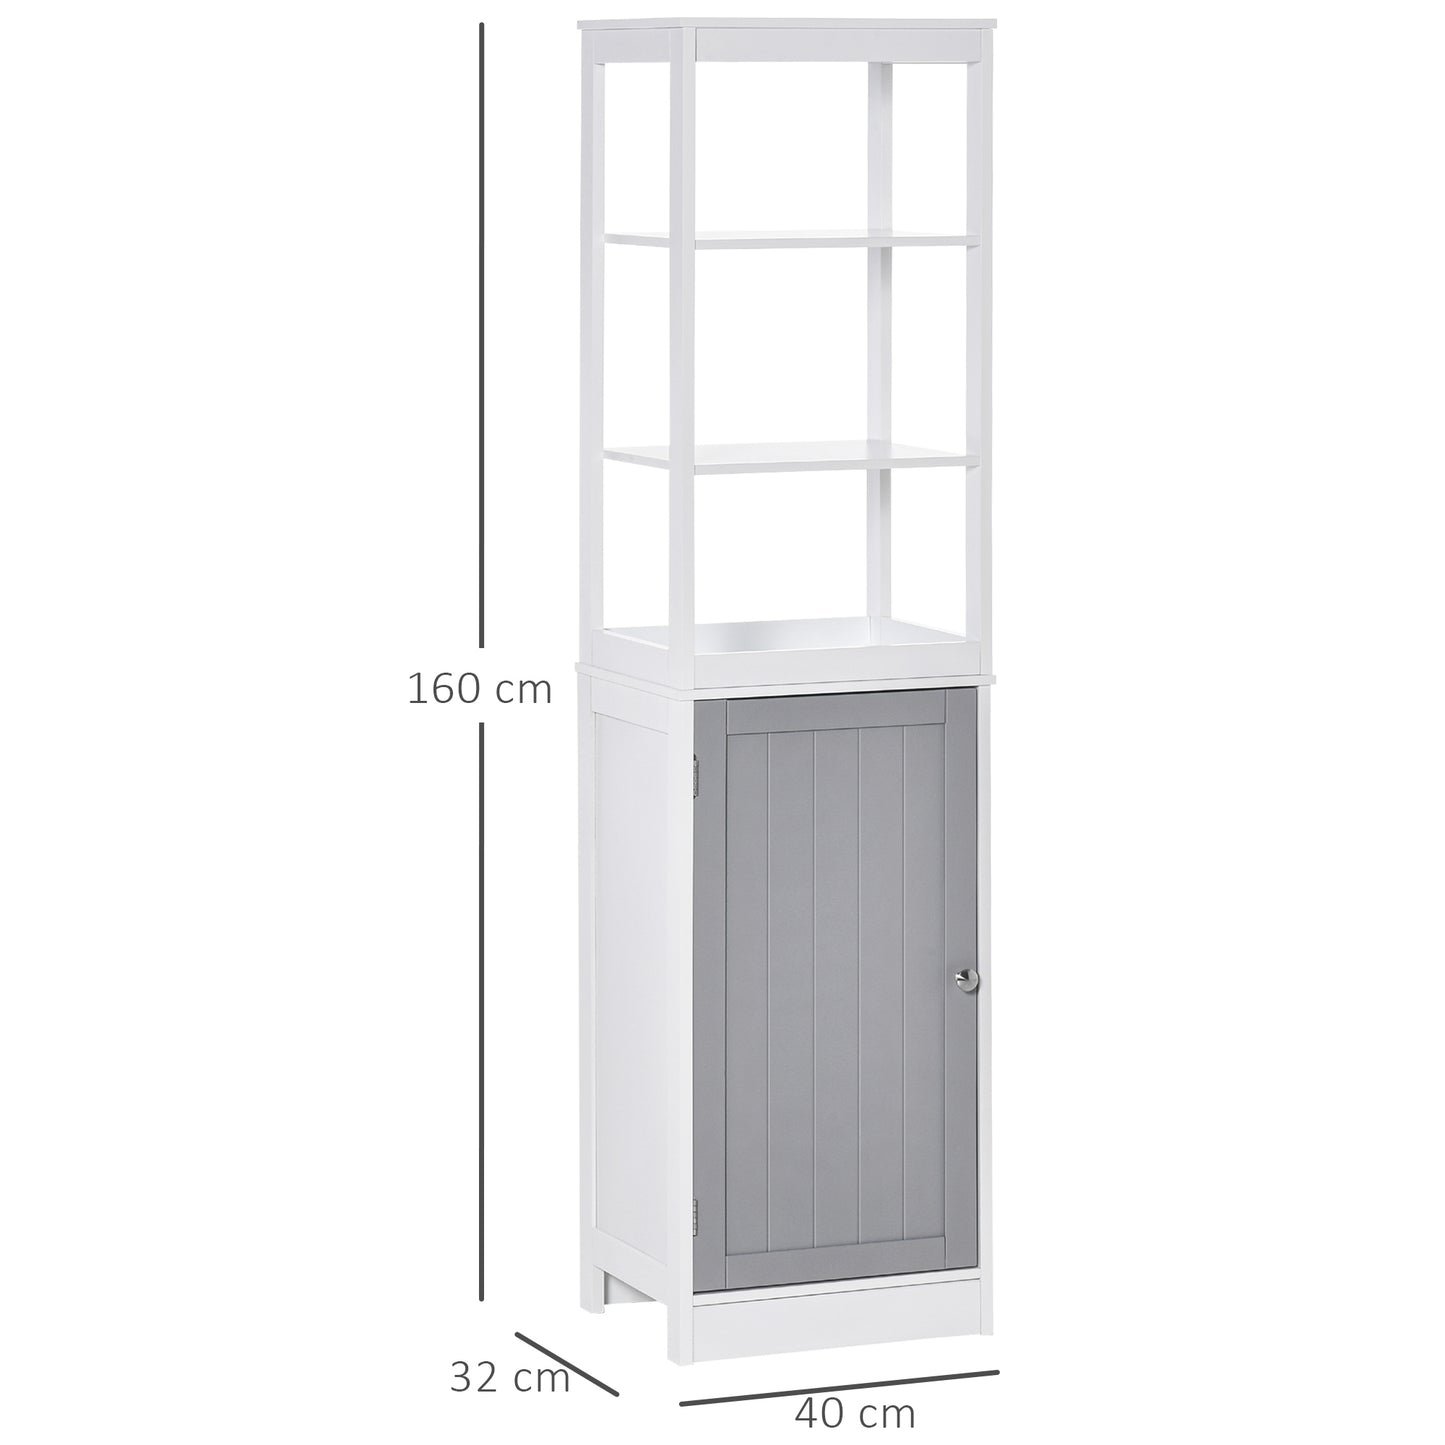 kleankin Bathroom Storage Cabinet Thin Storage Organizer with Door and Shelves